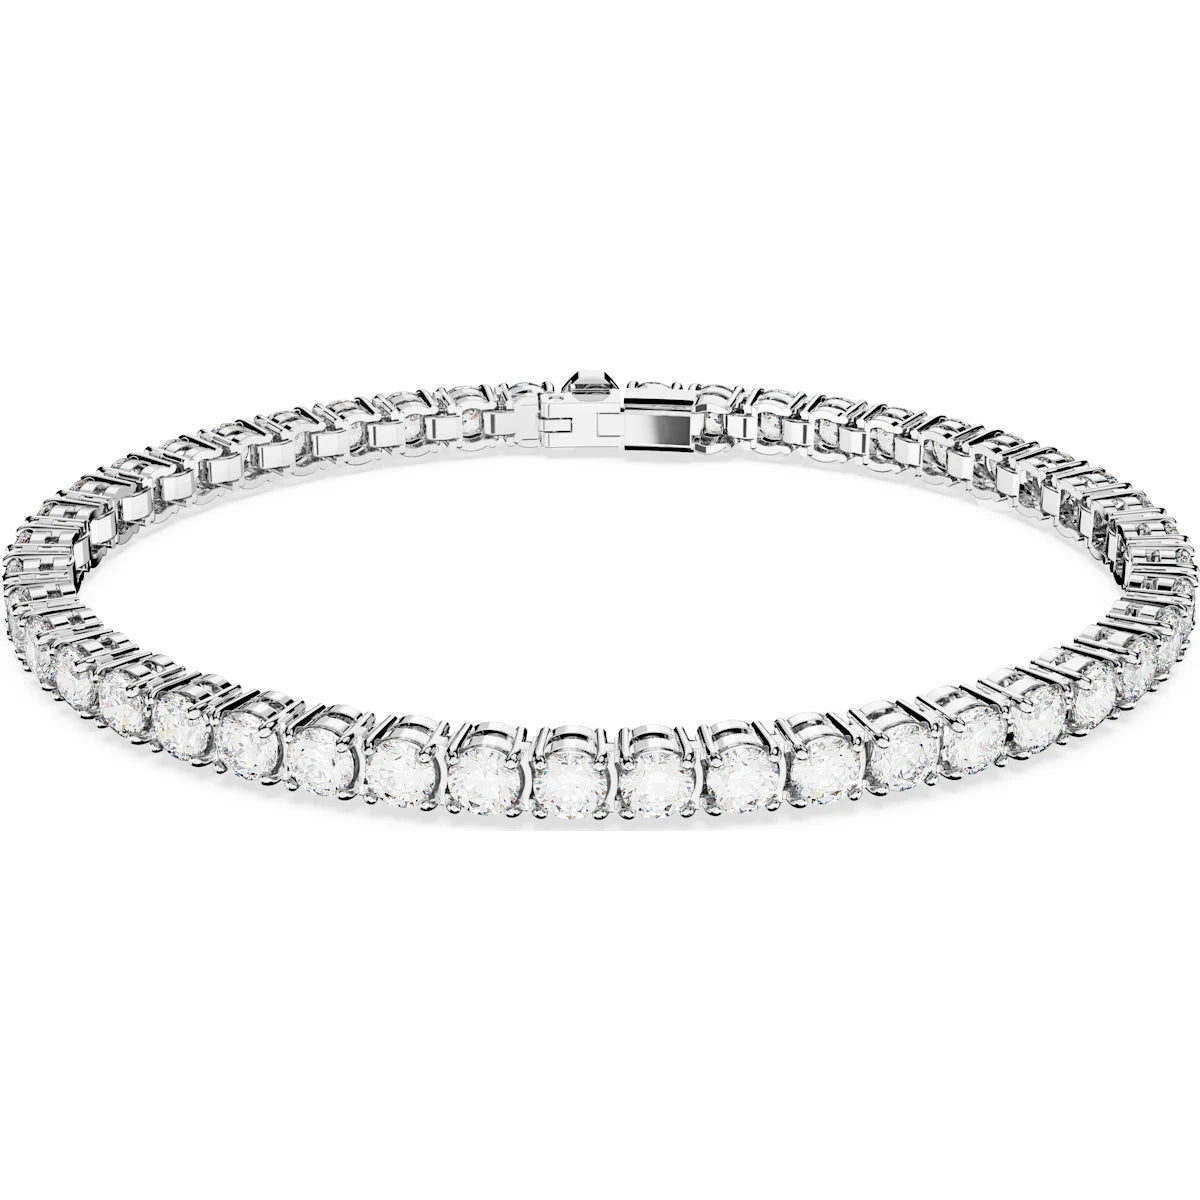 Swarovski Silver Matrix Tennis Bracelet with White Stones